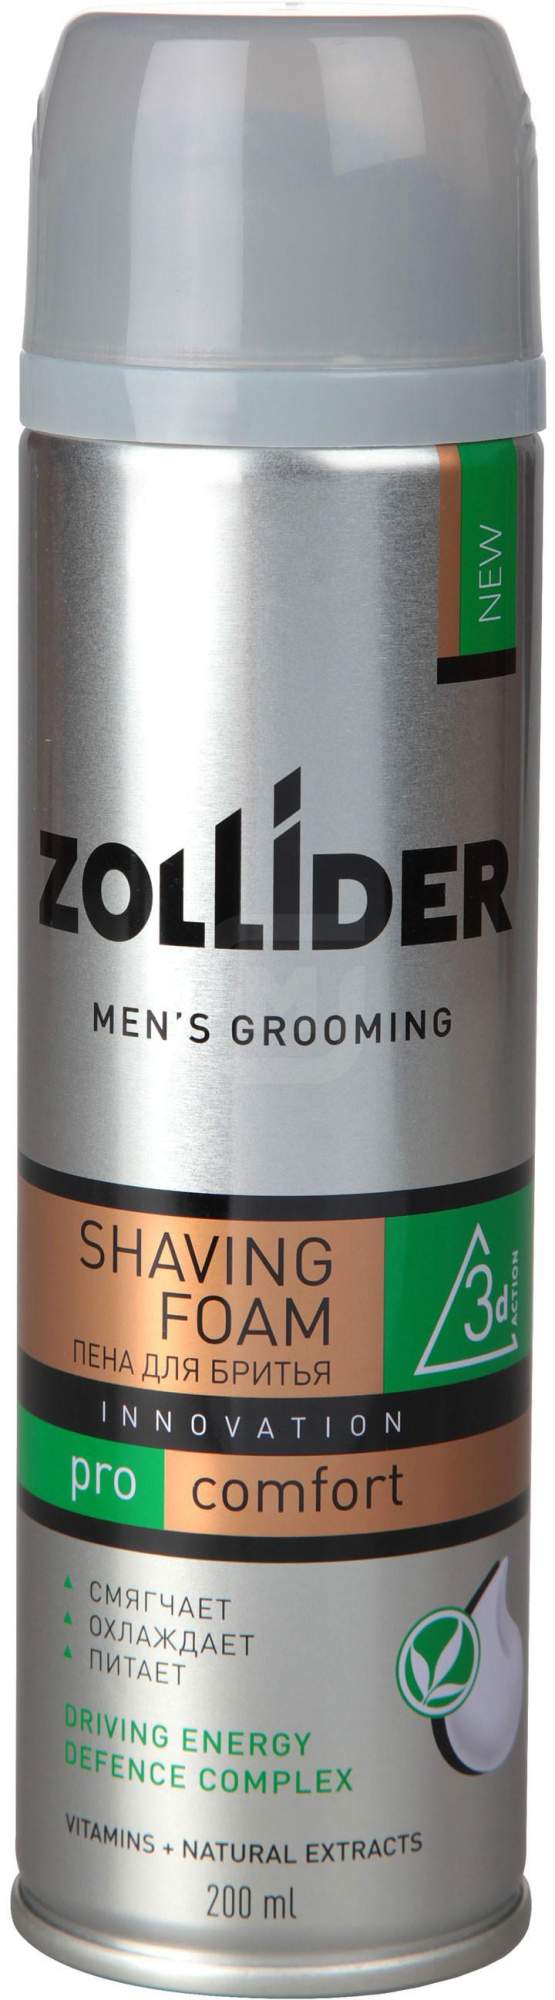 Пена для бритья Zollider Pro Comfort мужская 200 мл